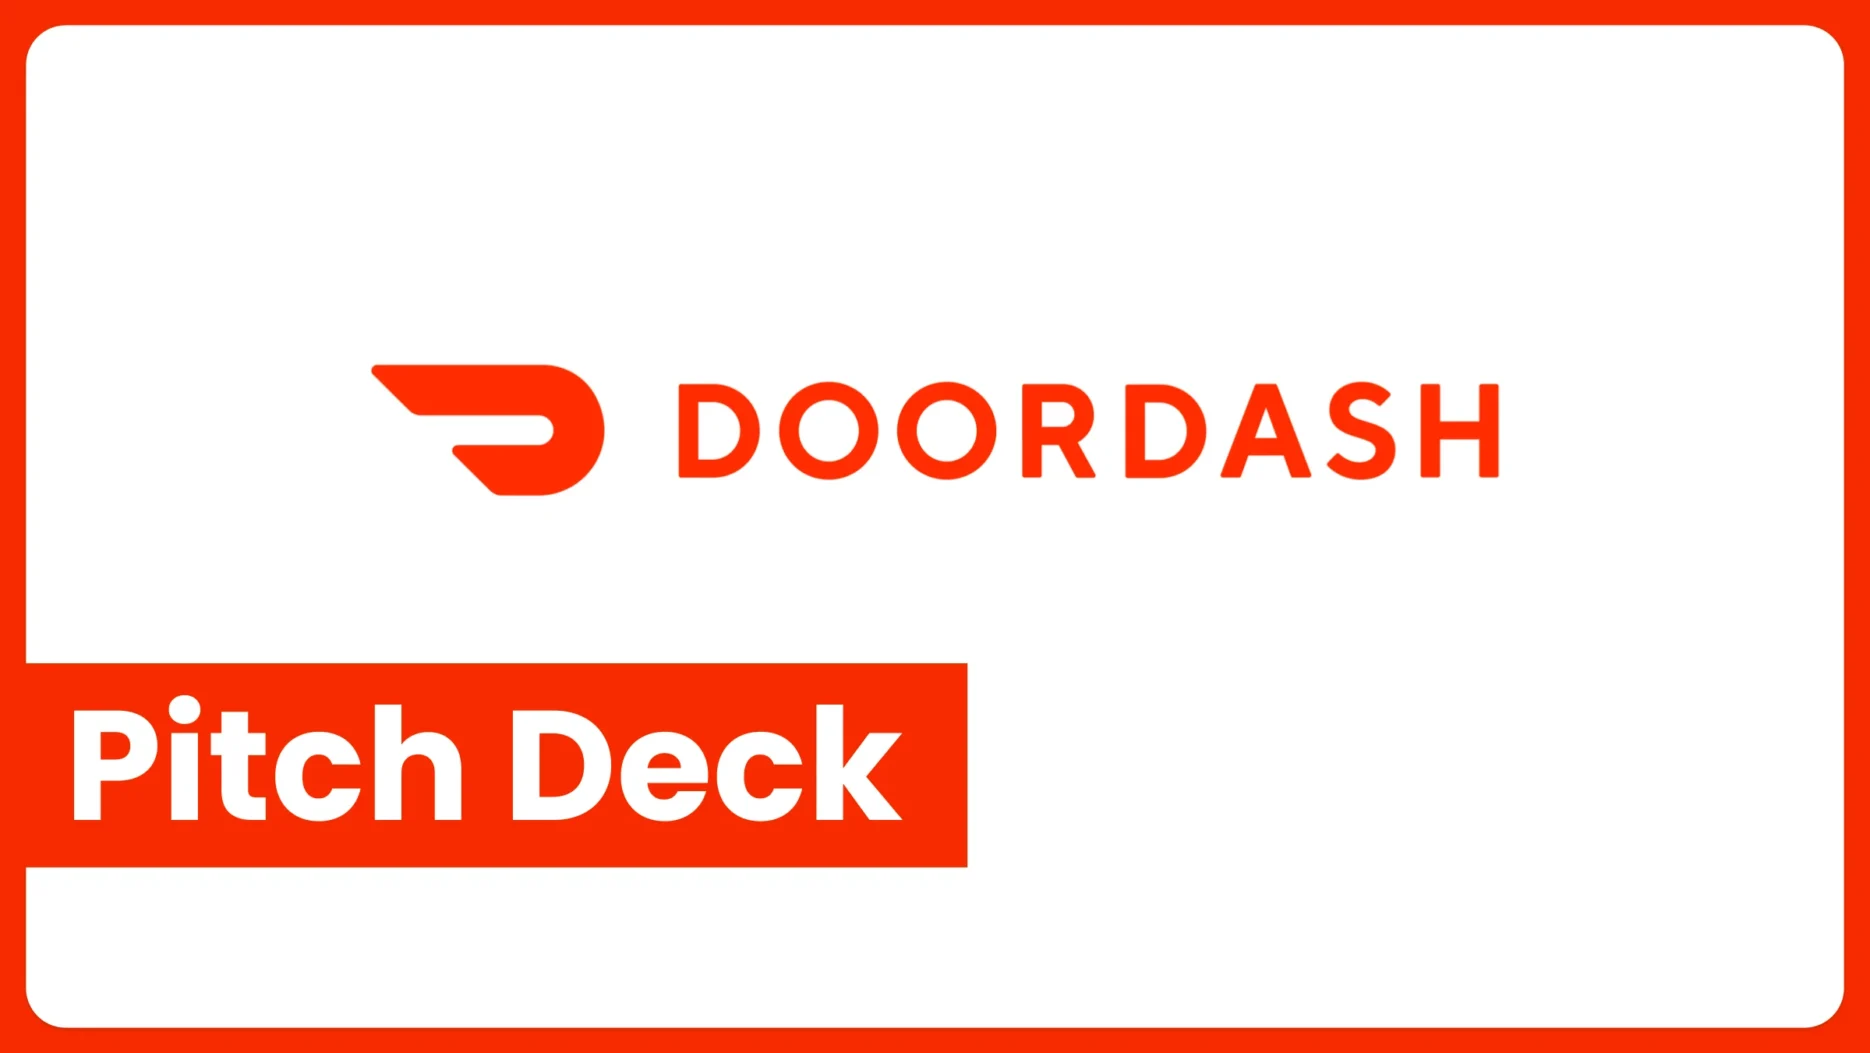 DoorDash Pitch Deck